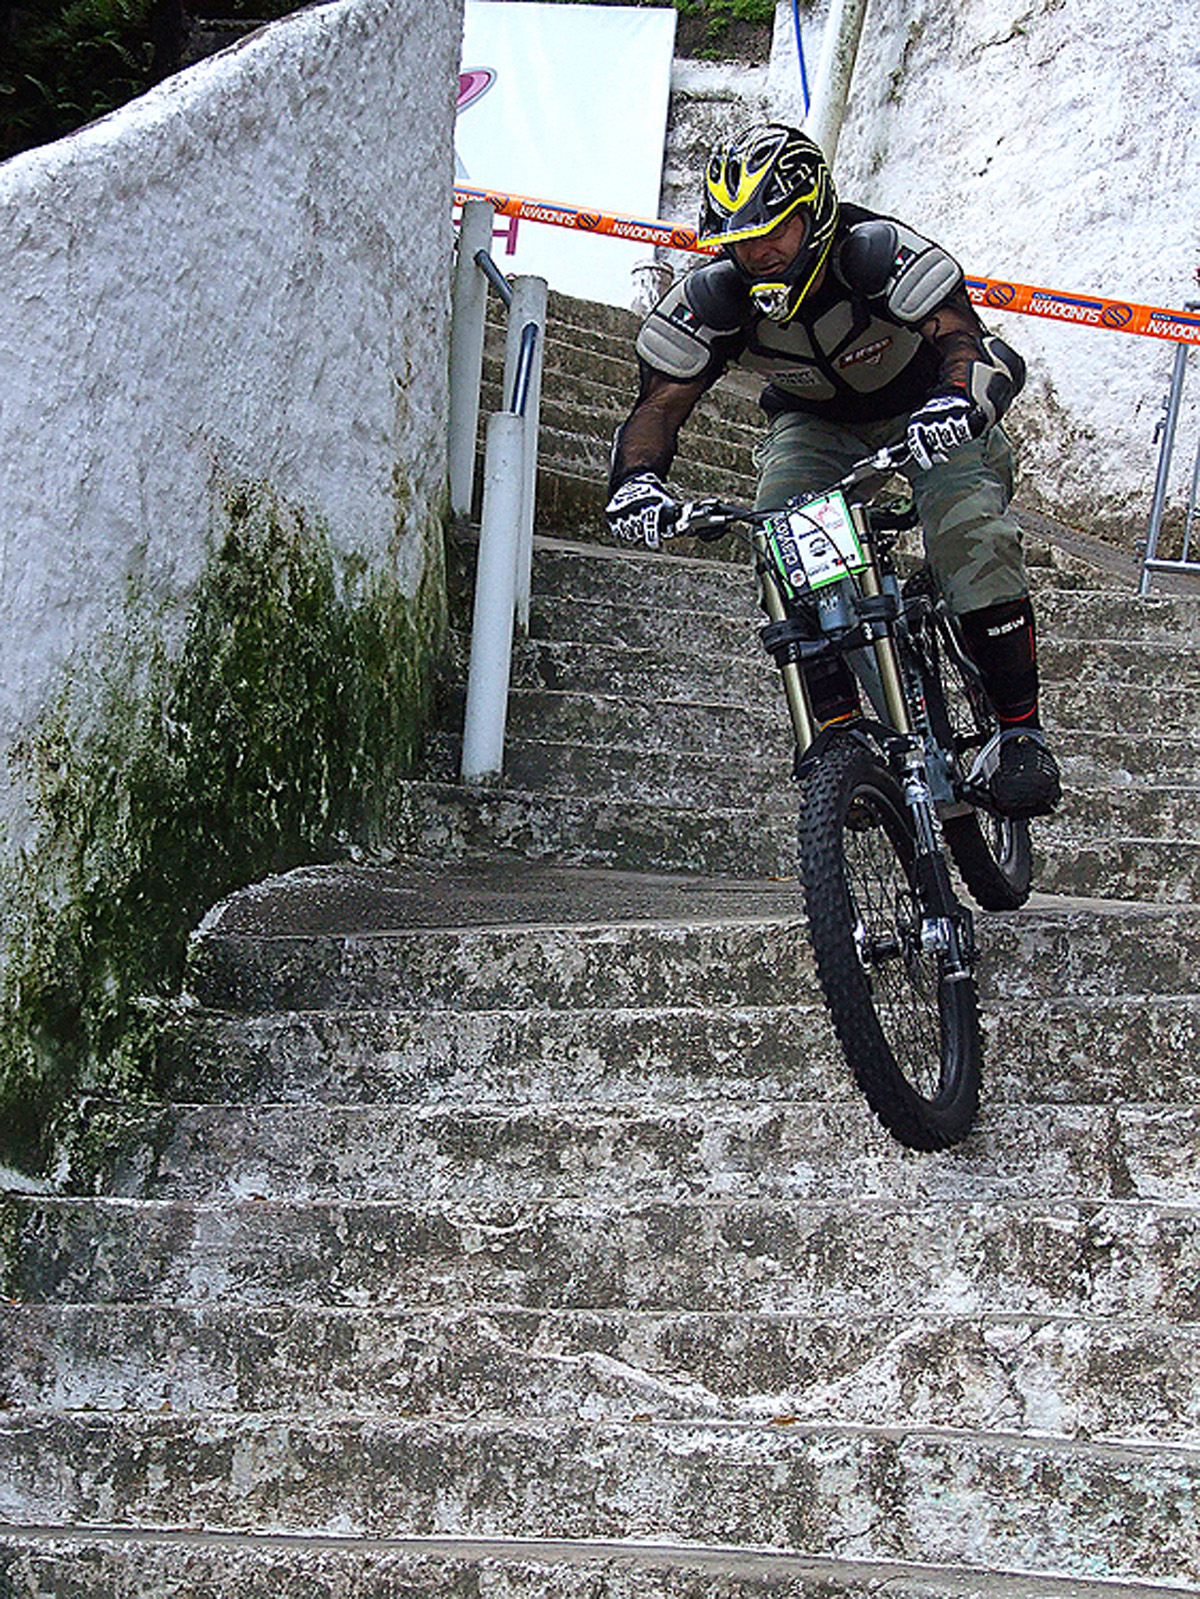 Ciclista pratica downhill nas escadarias do Monte Serrat<a style='float:right;color:#ccc' href='https://www3.al.sp.gov.br/repositorio/noticia/01-2010/PAULOALEXDownhill.jpg' target=_blank><i class='bi bi-zoom-in'></i> Clique para ver a imagem </a>